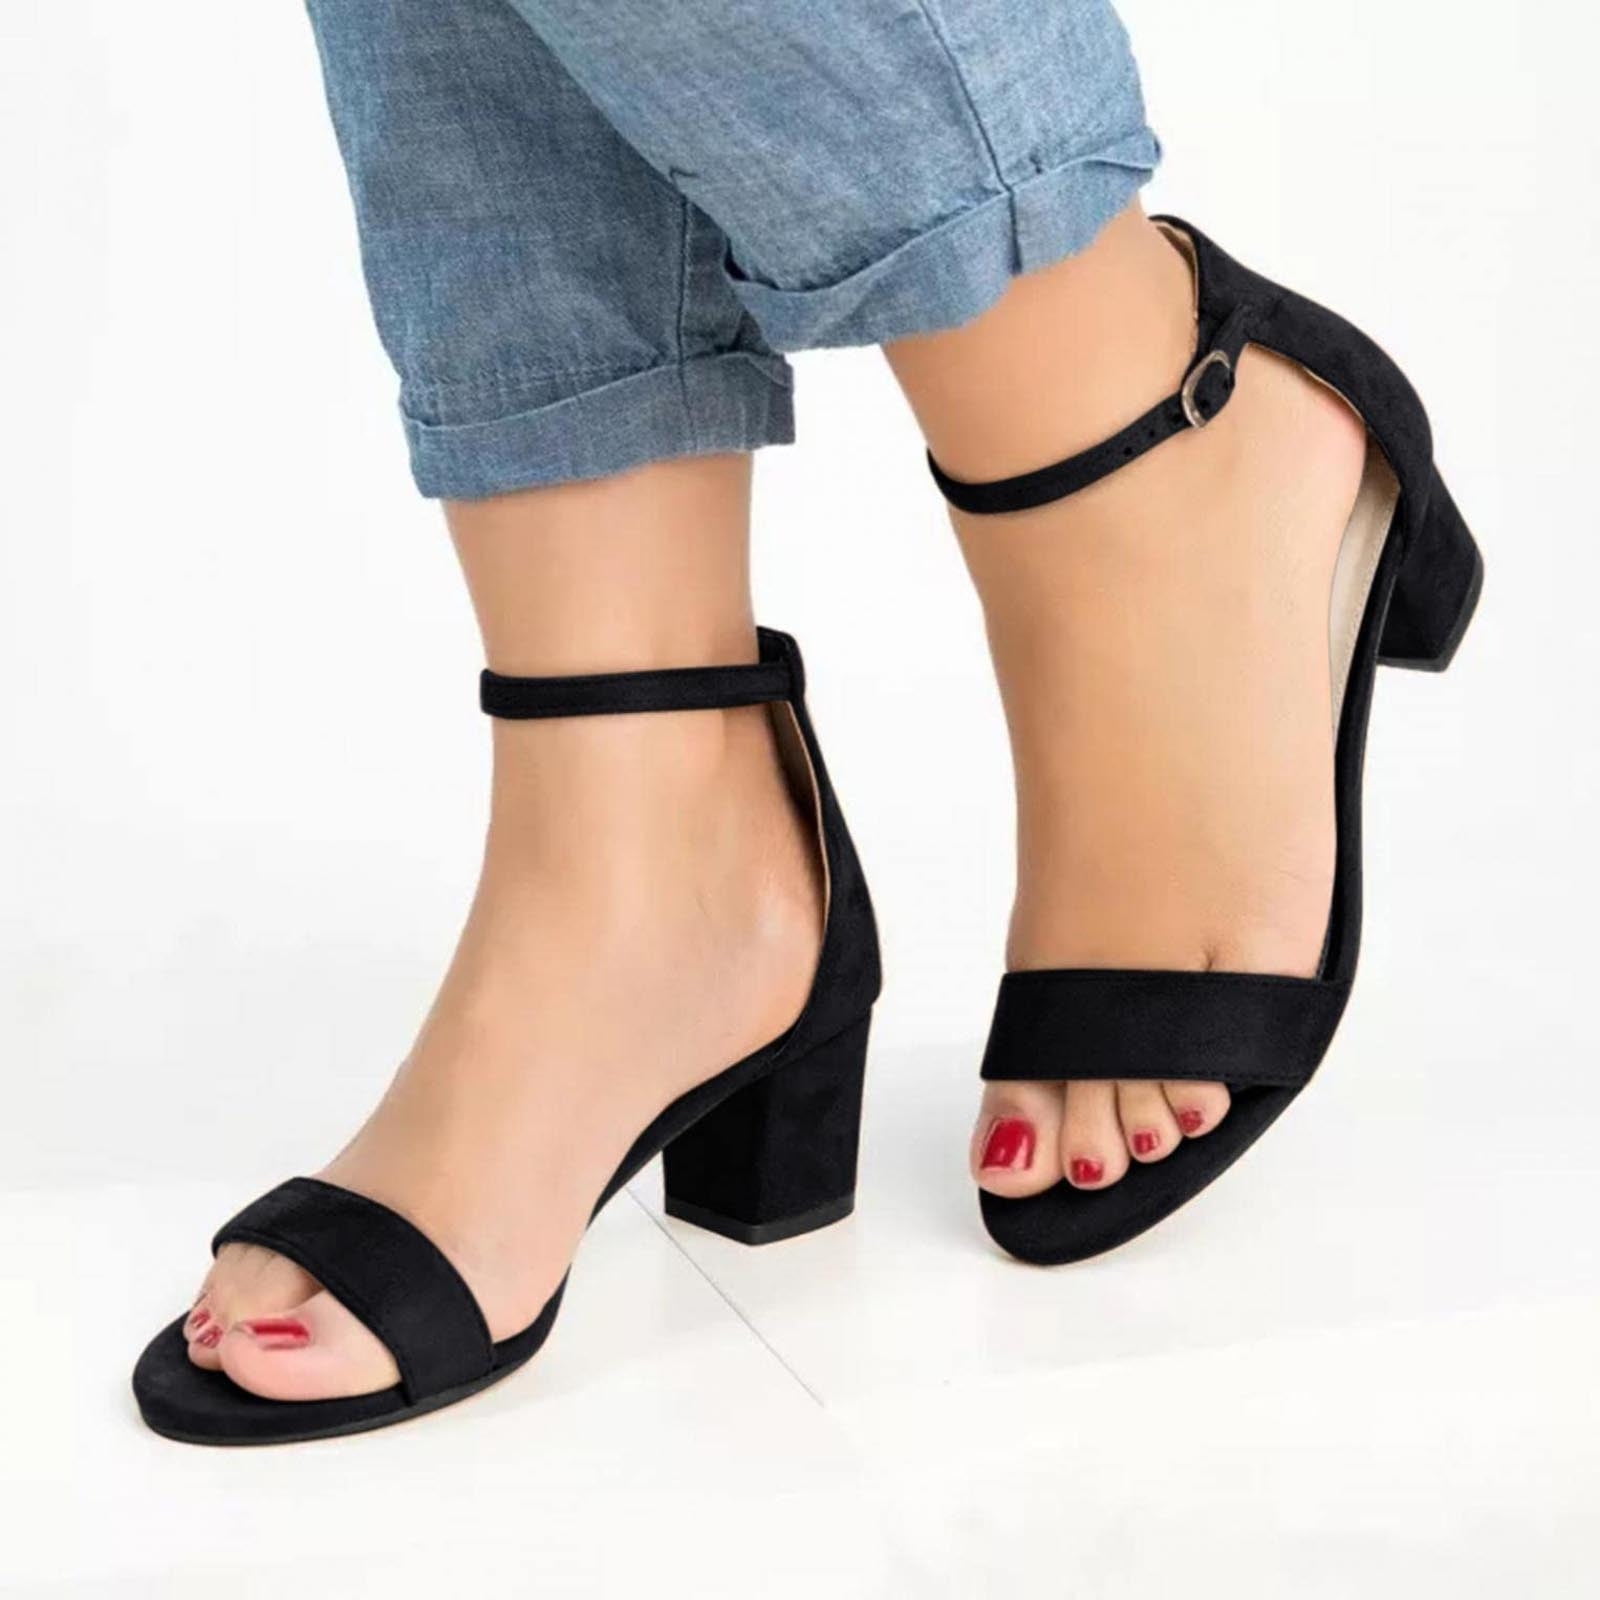 Pruce Ankle Strap Block Heel Sandals – Nine West